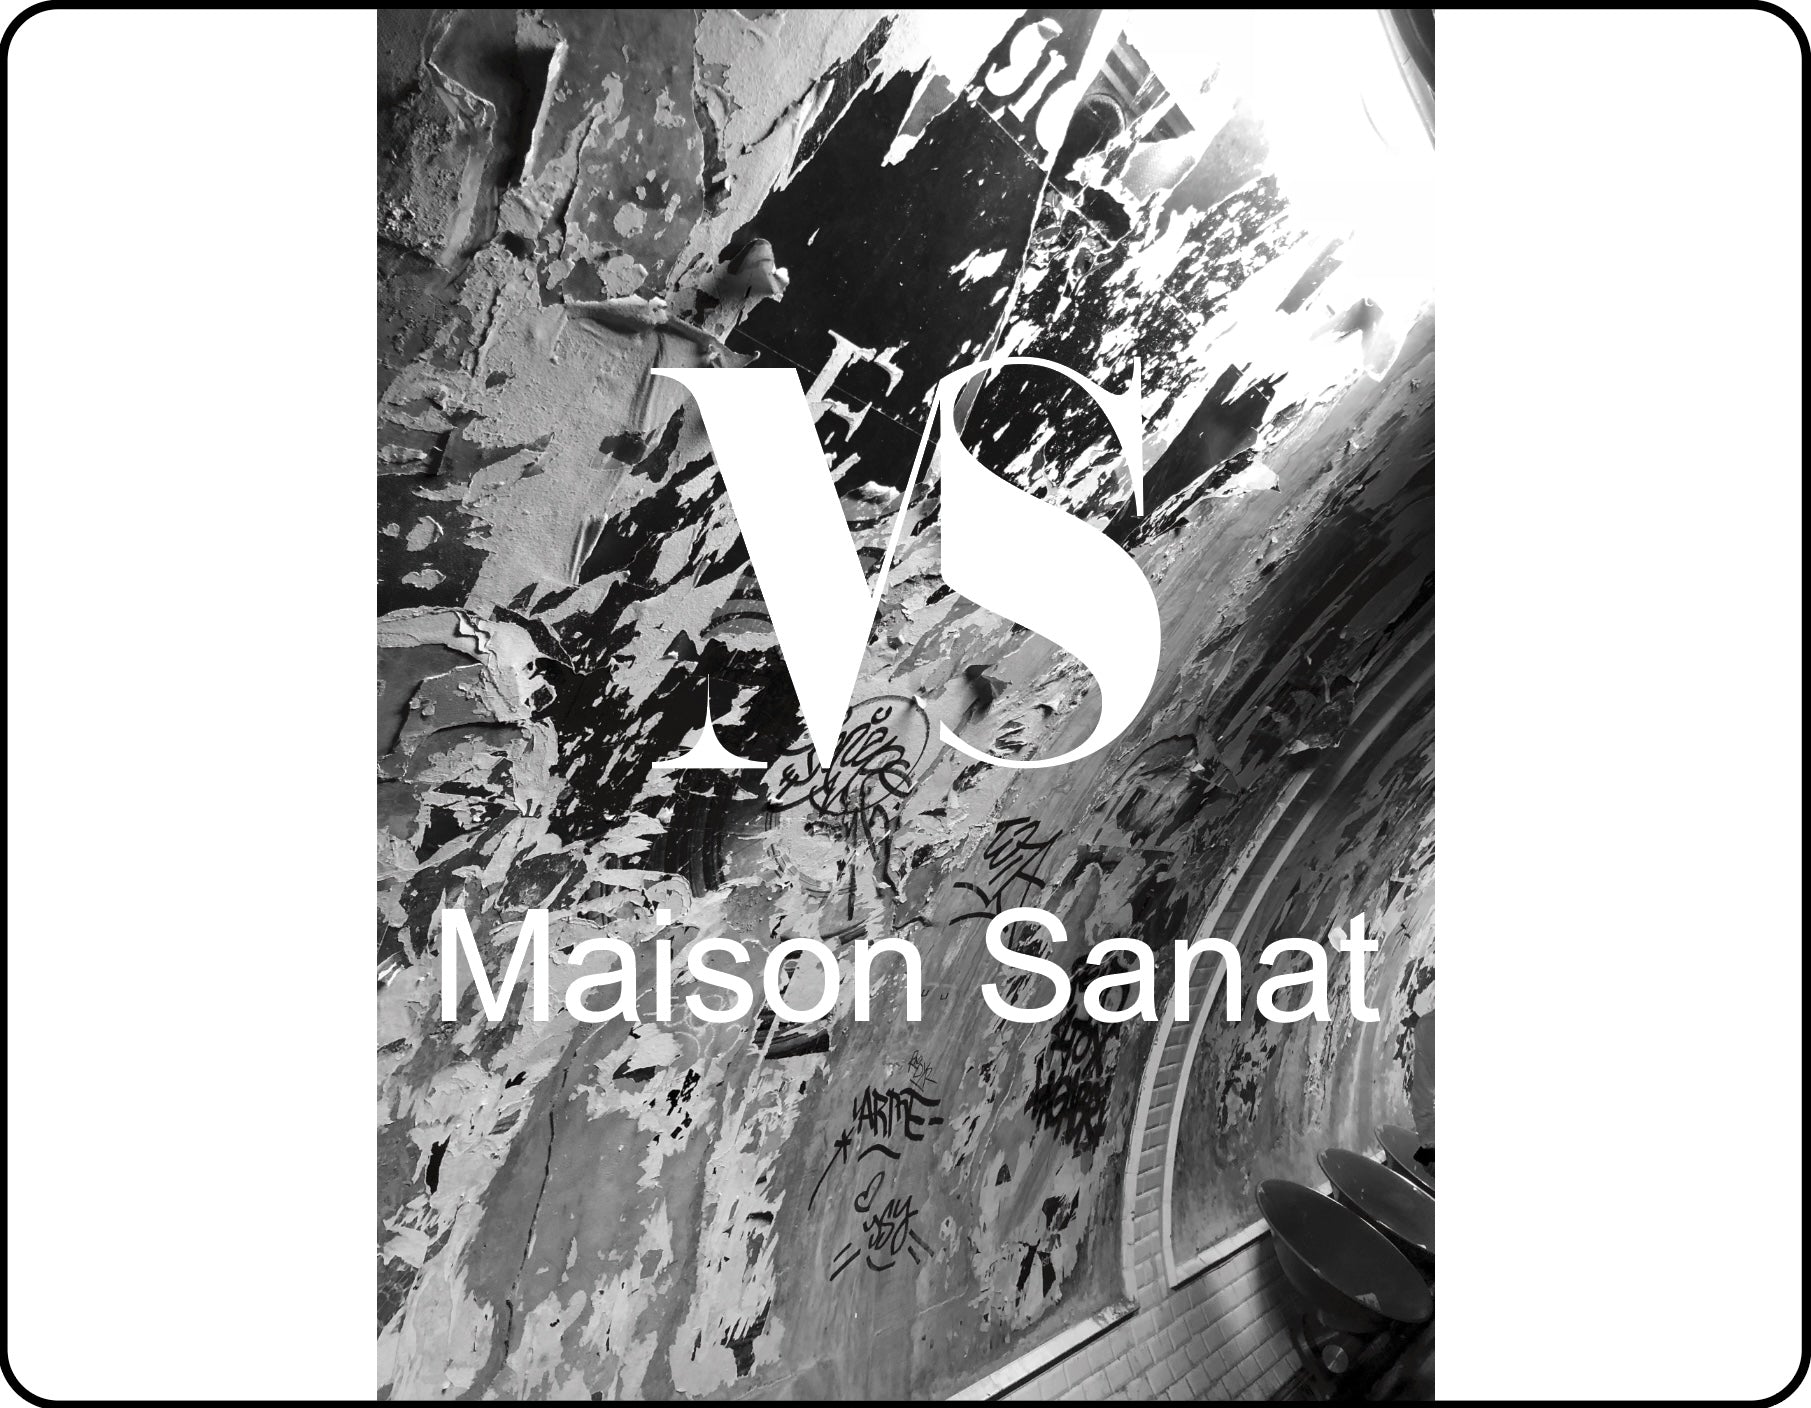 Recto de la carte cadeau Maison Sanat. Le logo MS et l’écriture maison sanat sont en blanc au premier plan d’une photographie prise par Bruno Candir dans le métro parisien. L’image montre les encarts publicitaires du métro avec les affiches déchirées. La photo est en noir et blanc.